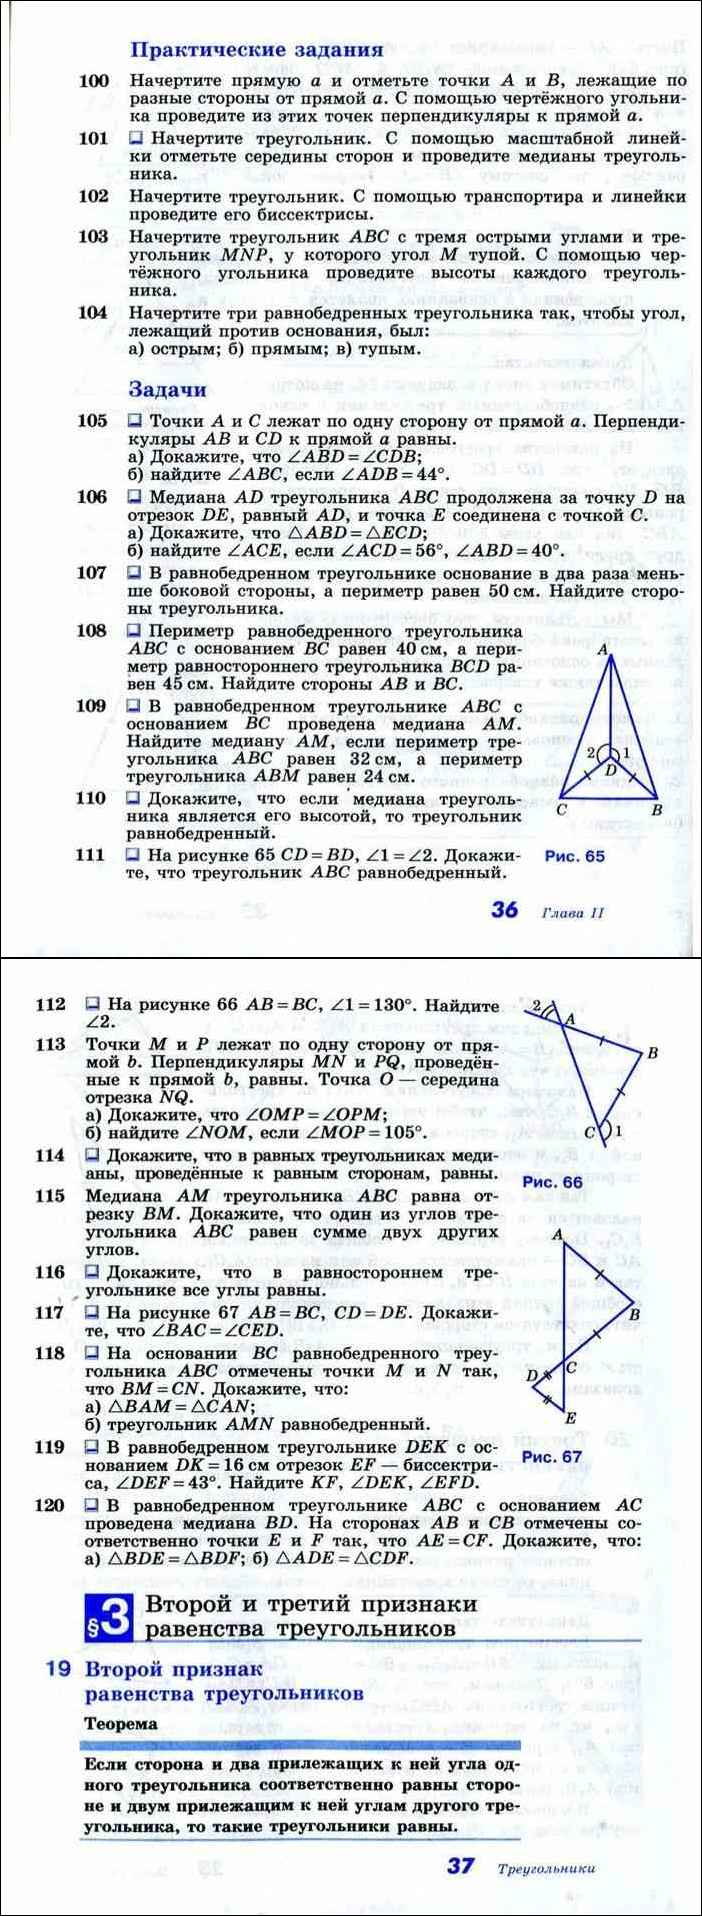 Перпендикуляр к прямой / треугольники / справочник по геометрии 7-9 класс